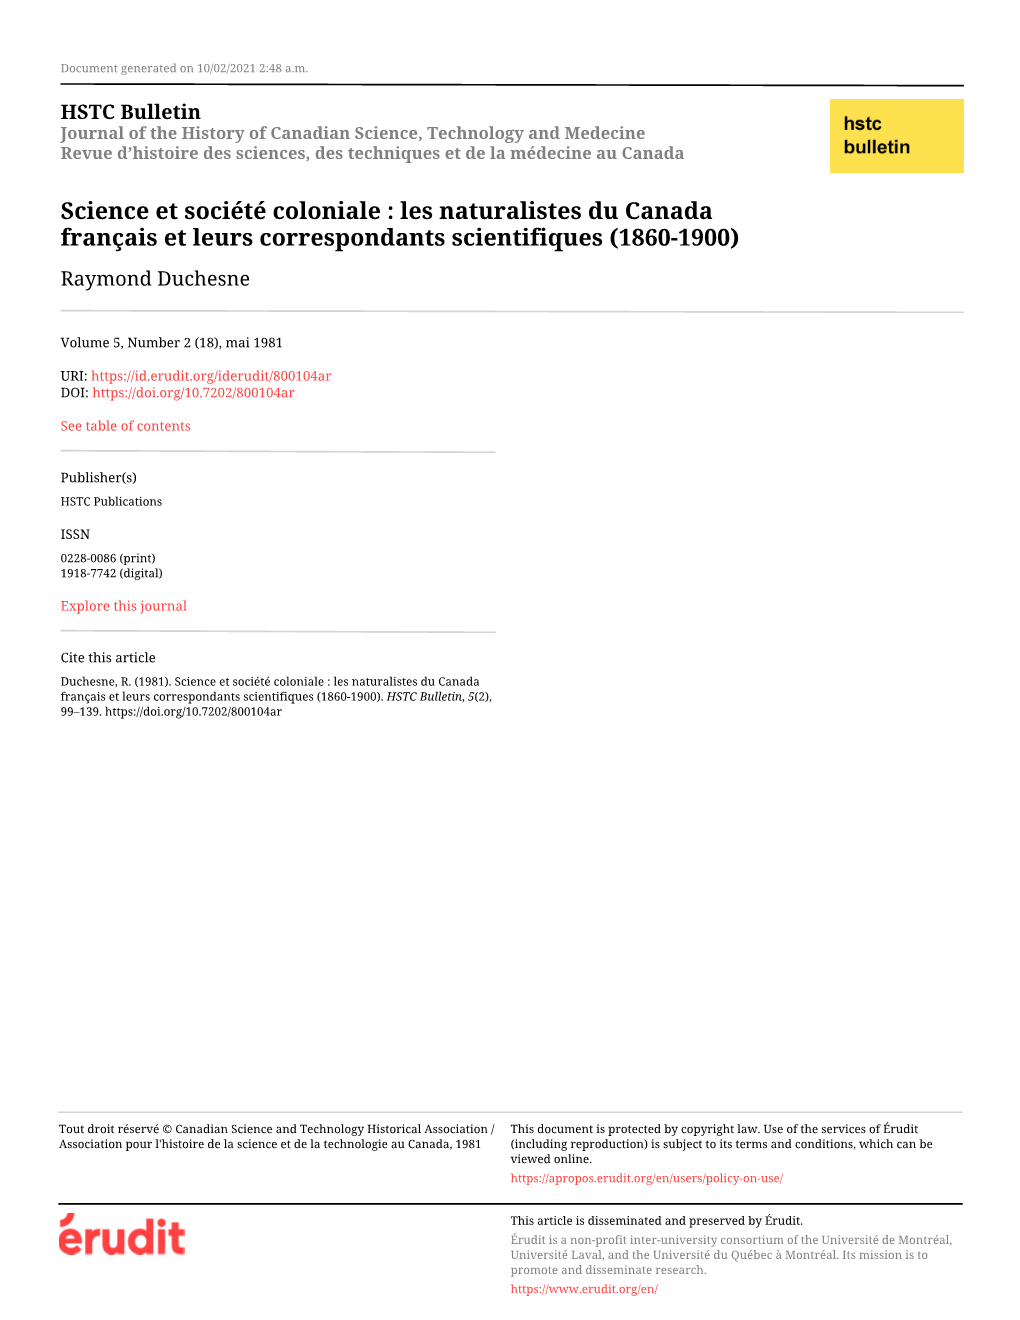 Science Et Société Coloniale : Les Naturalistes Du Canada Français Et Leurs Correspondants Scientifiques (1860-1900) Raymond Duchesne